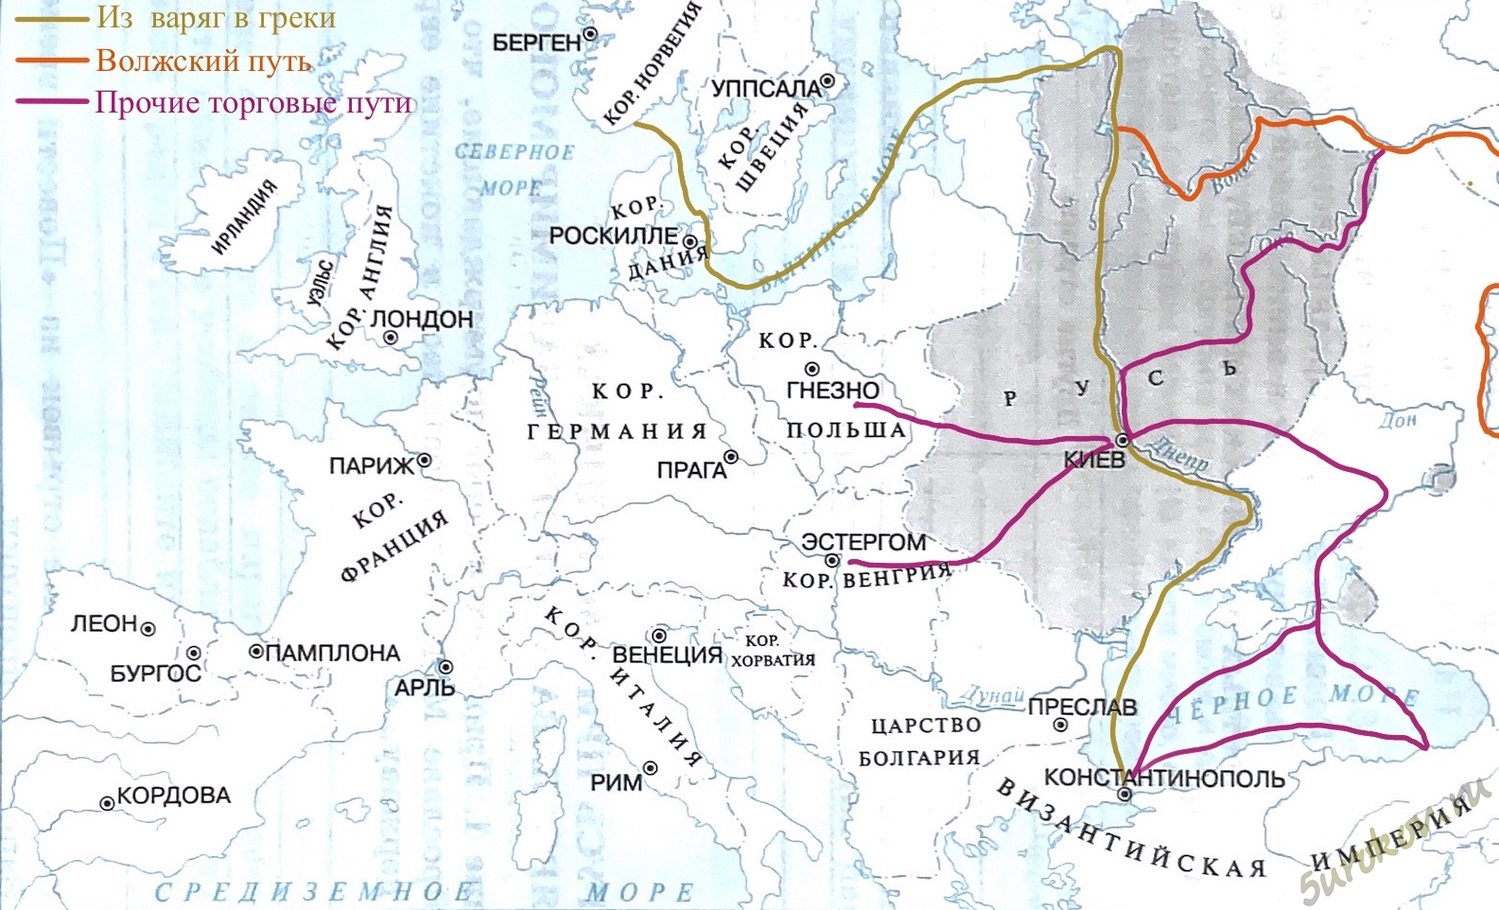 Путь из Варяг в греки на карте